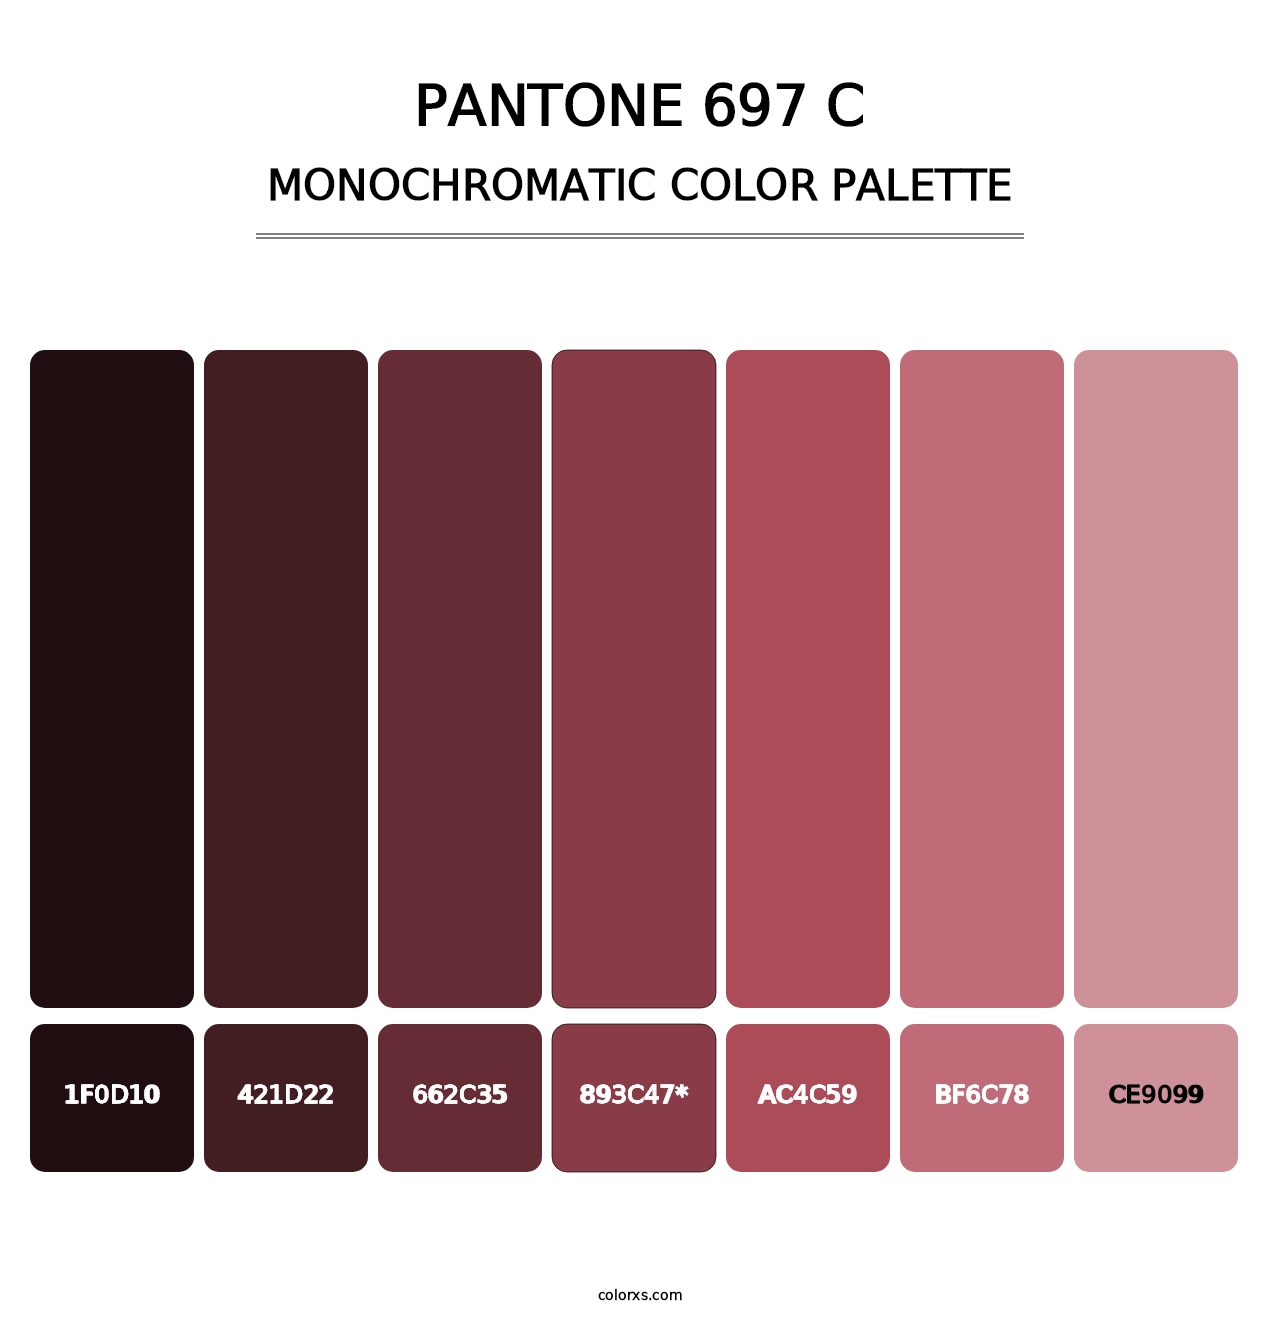 PANTONE 697 C - Monochromatic Color Palette